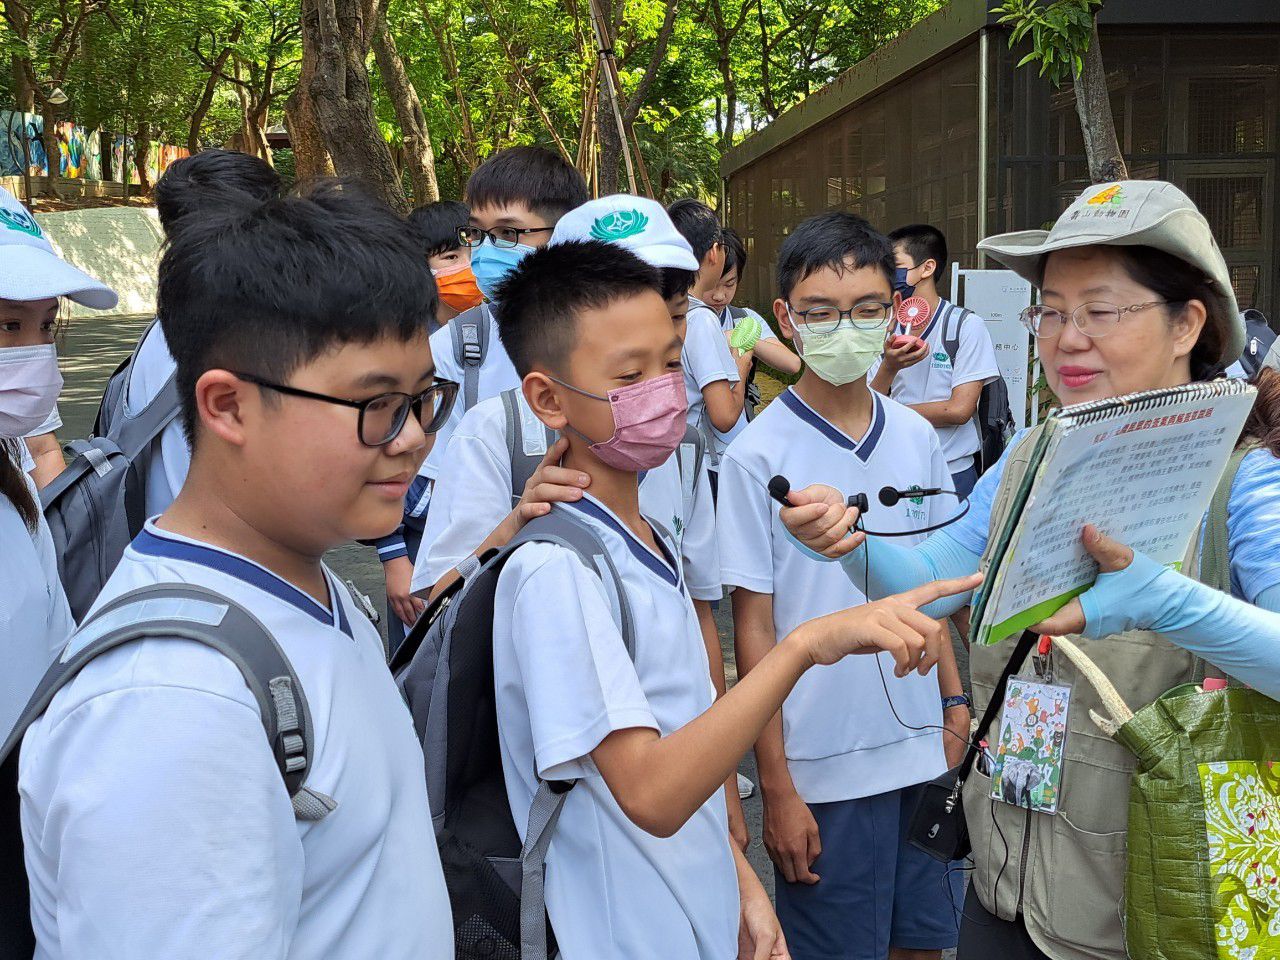 壽山動物園特別派出導覽員向同學介紹動物生態。